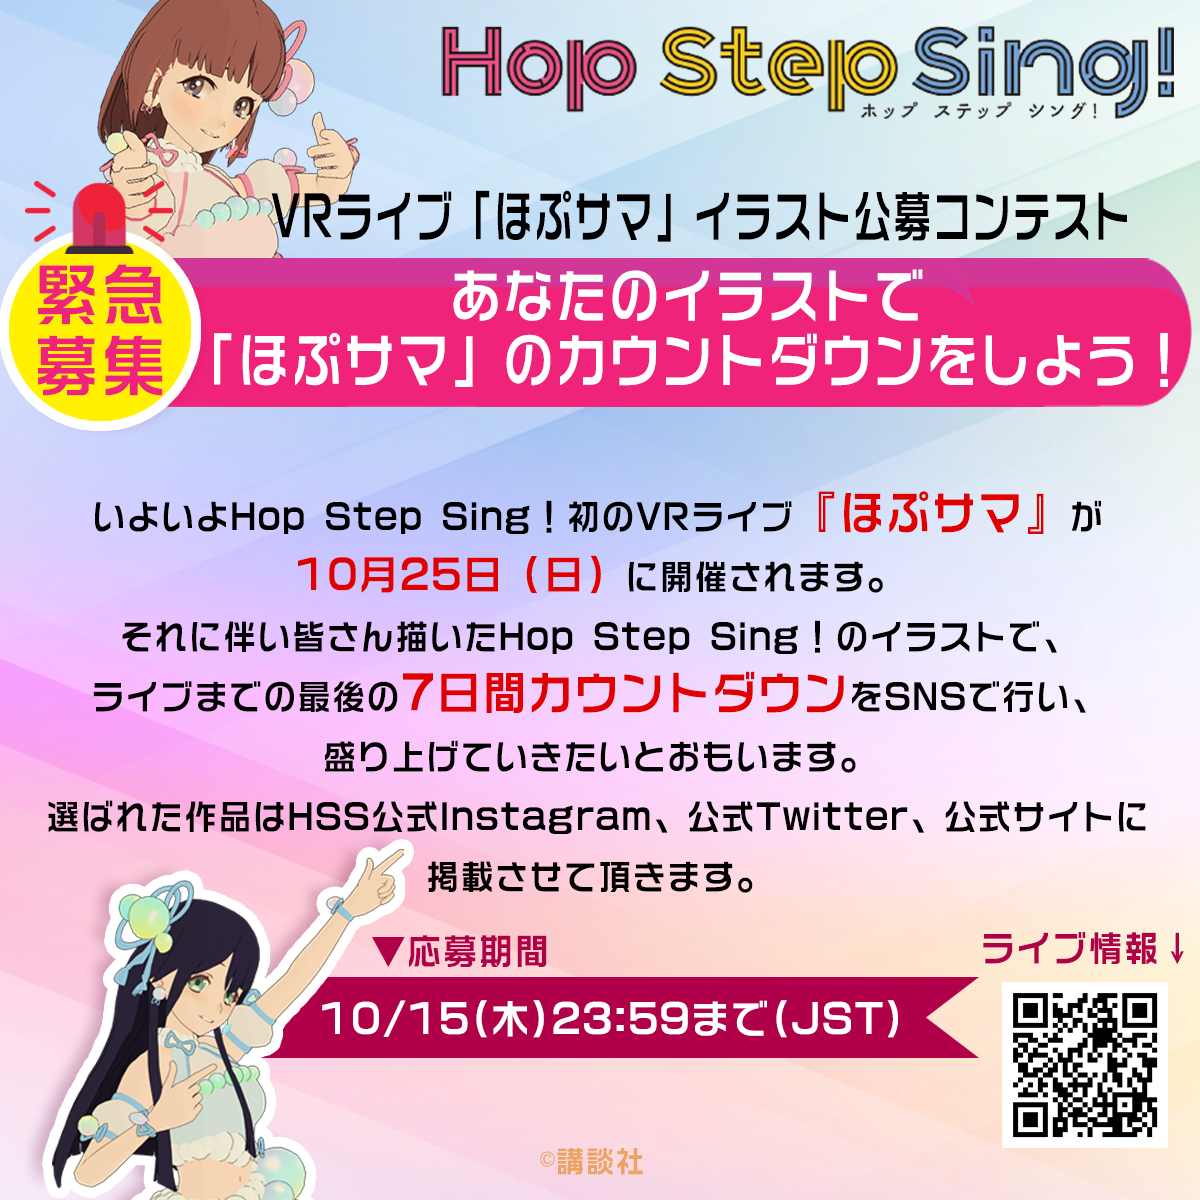 Vrライブ ほぷサマ イラスト公募コンテストのお知らせ Hop Step Sing 公式サイト